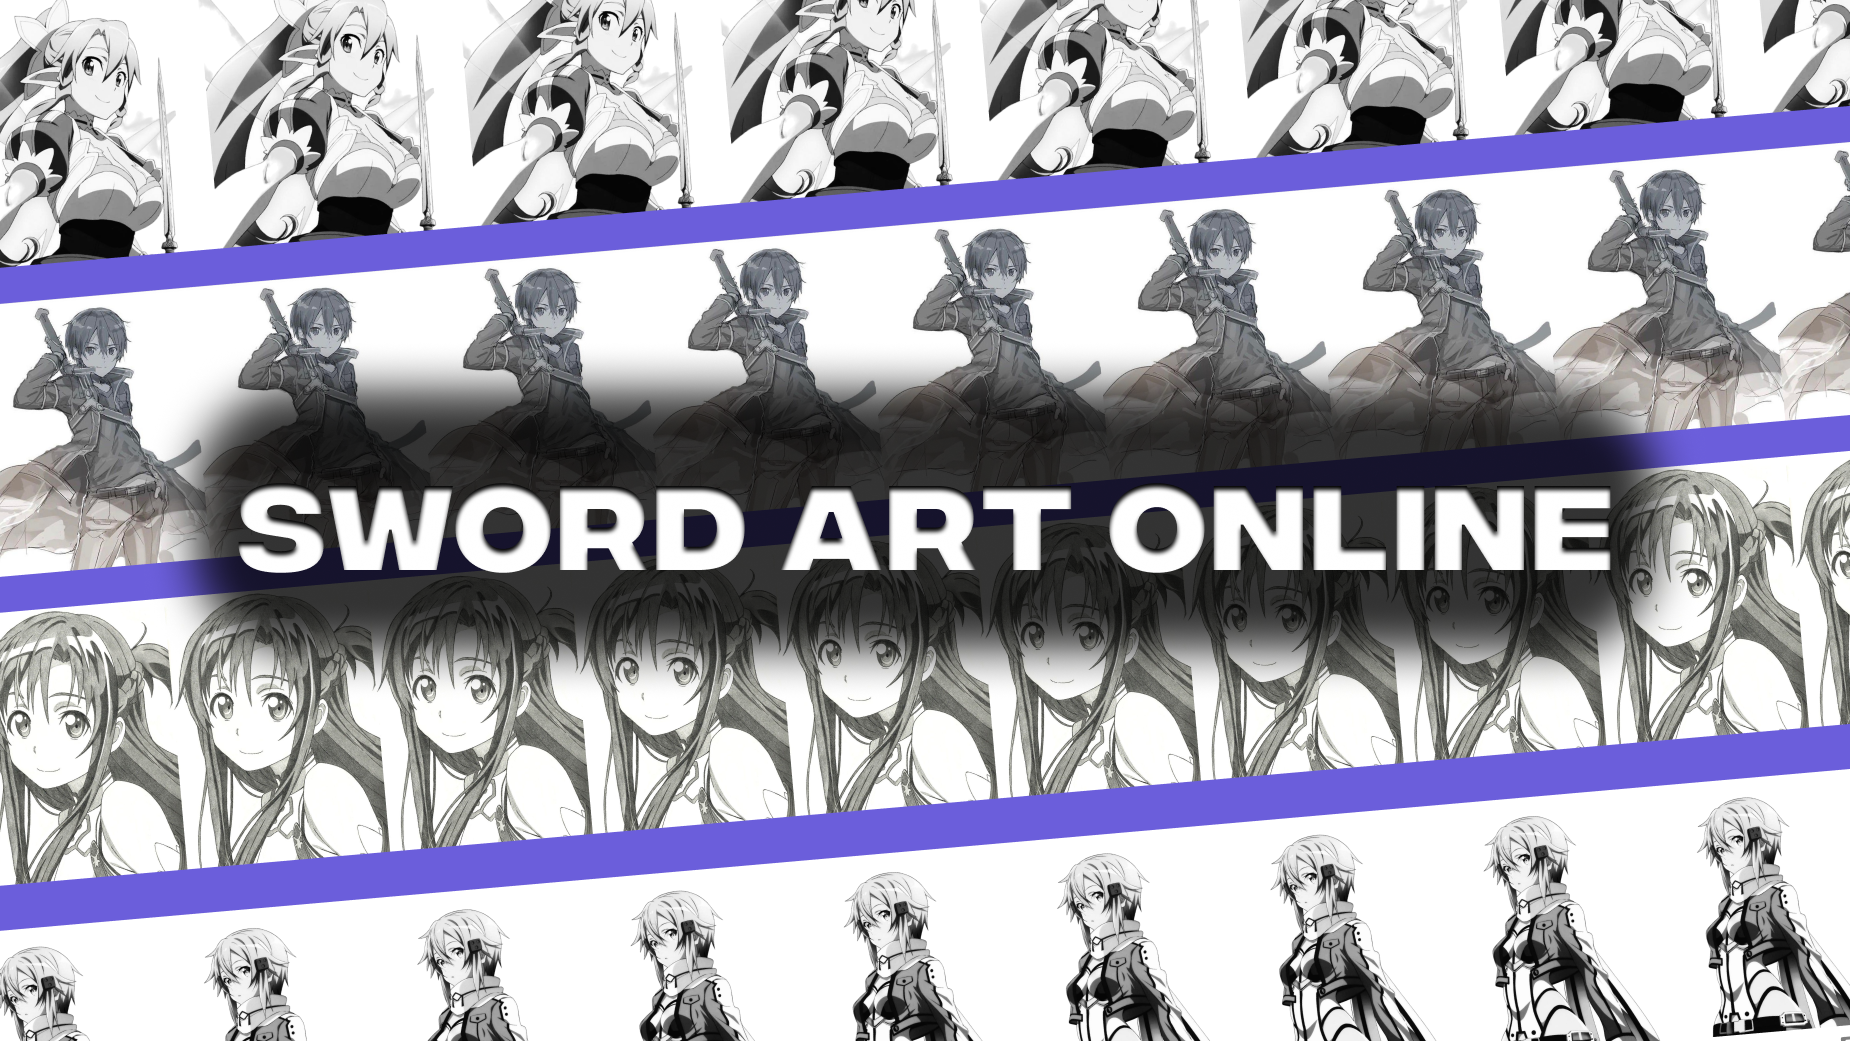 Vous connaissez Sword Art Online?